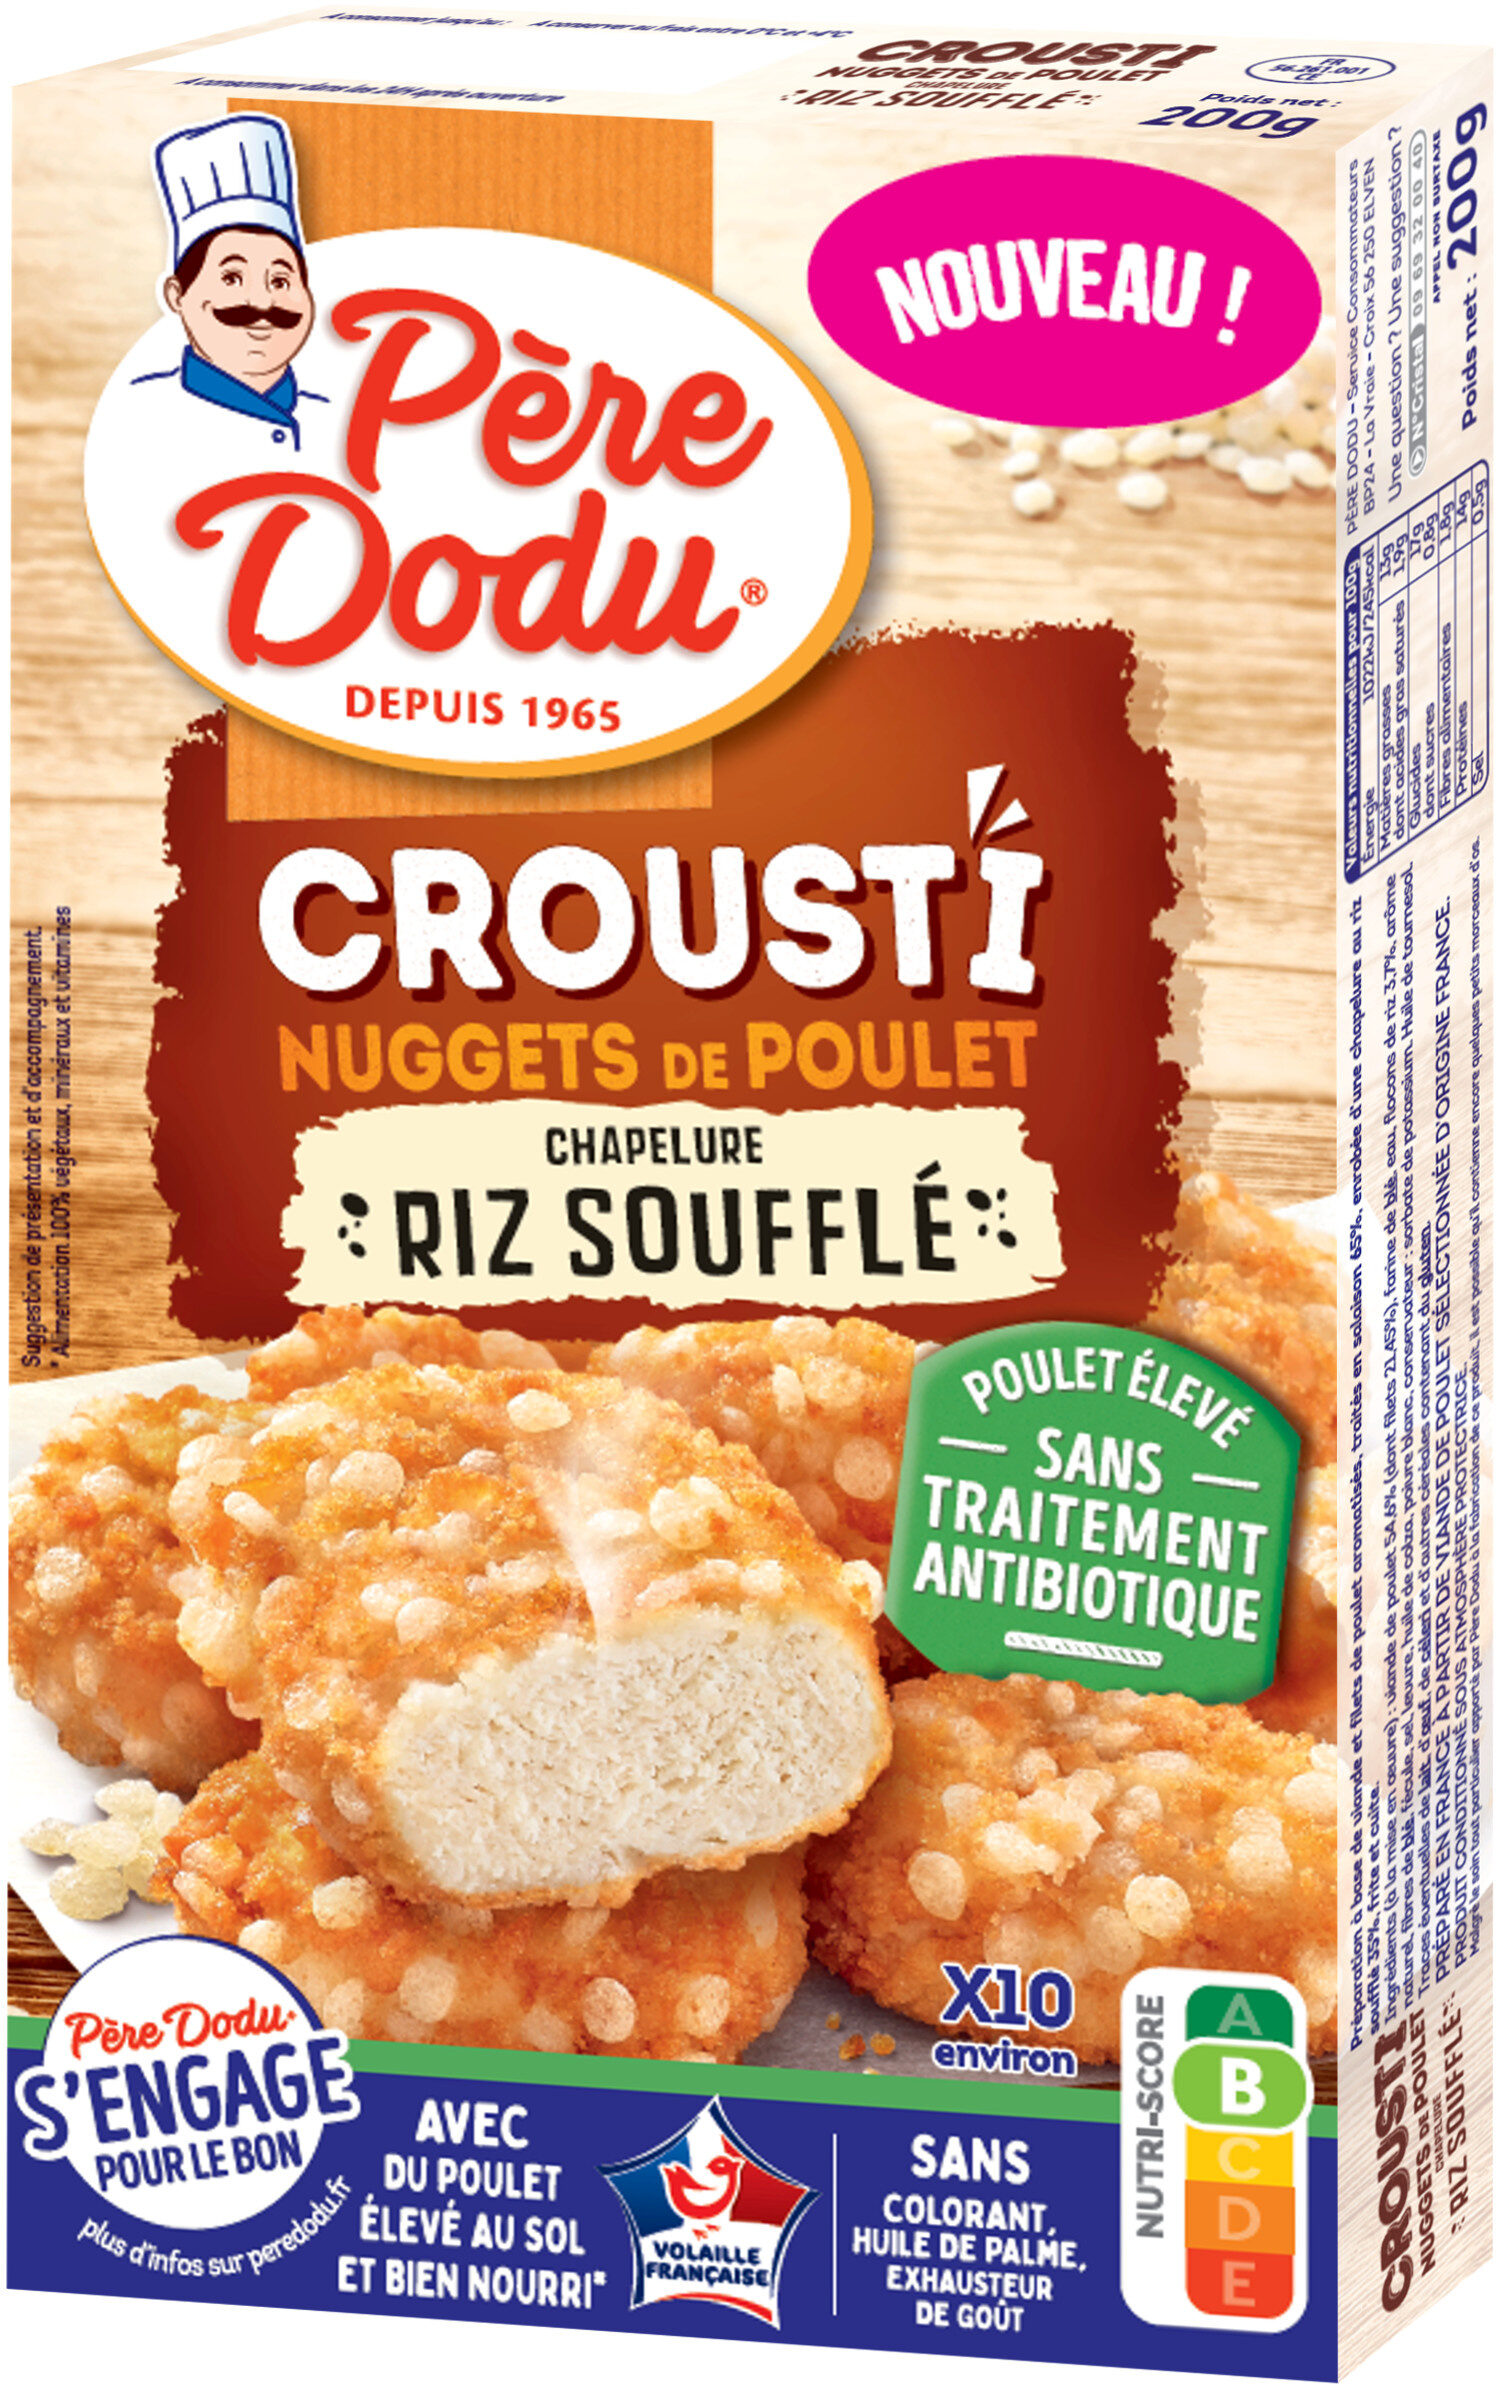 Crousti nuggets de poulet chapelure riz souffle - Product - fr